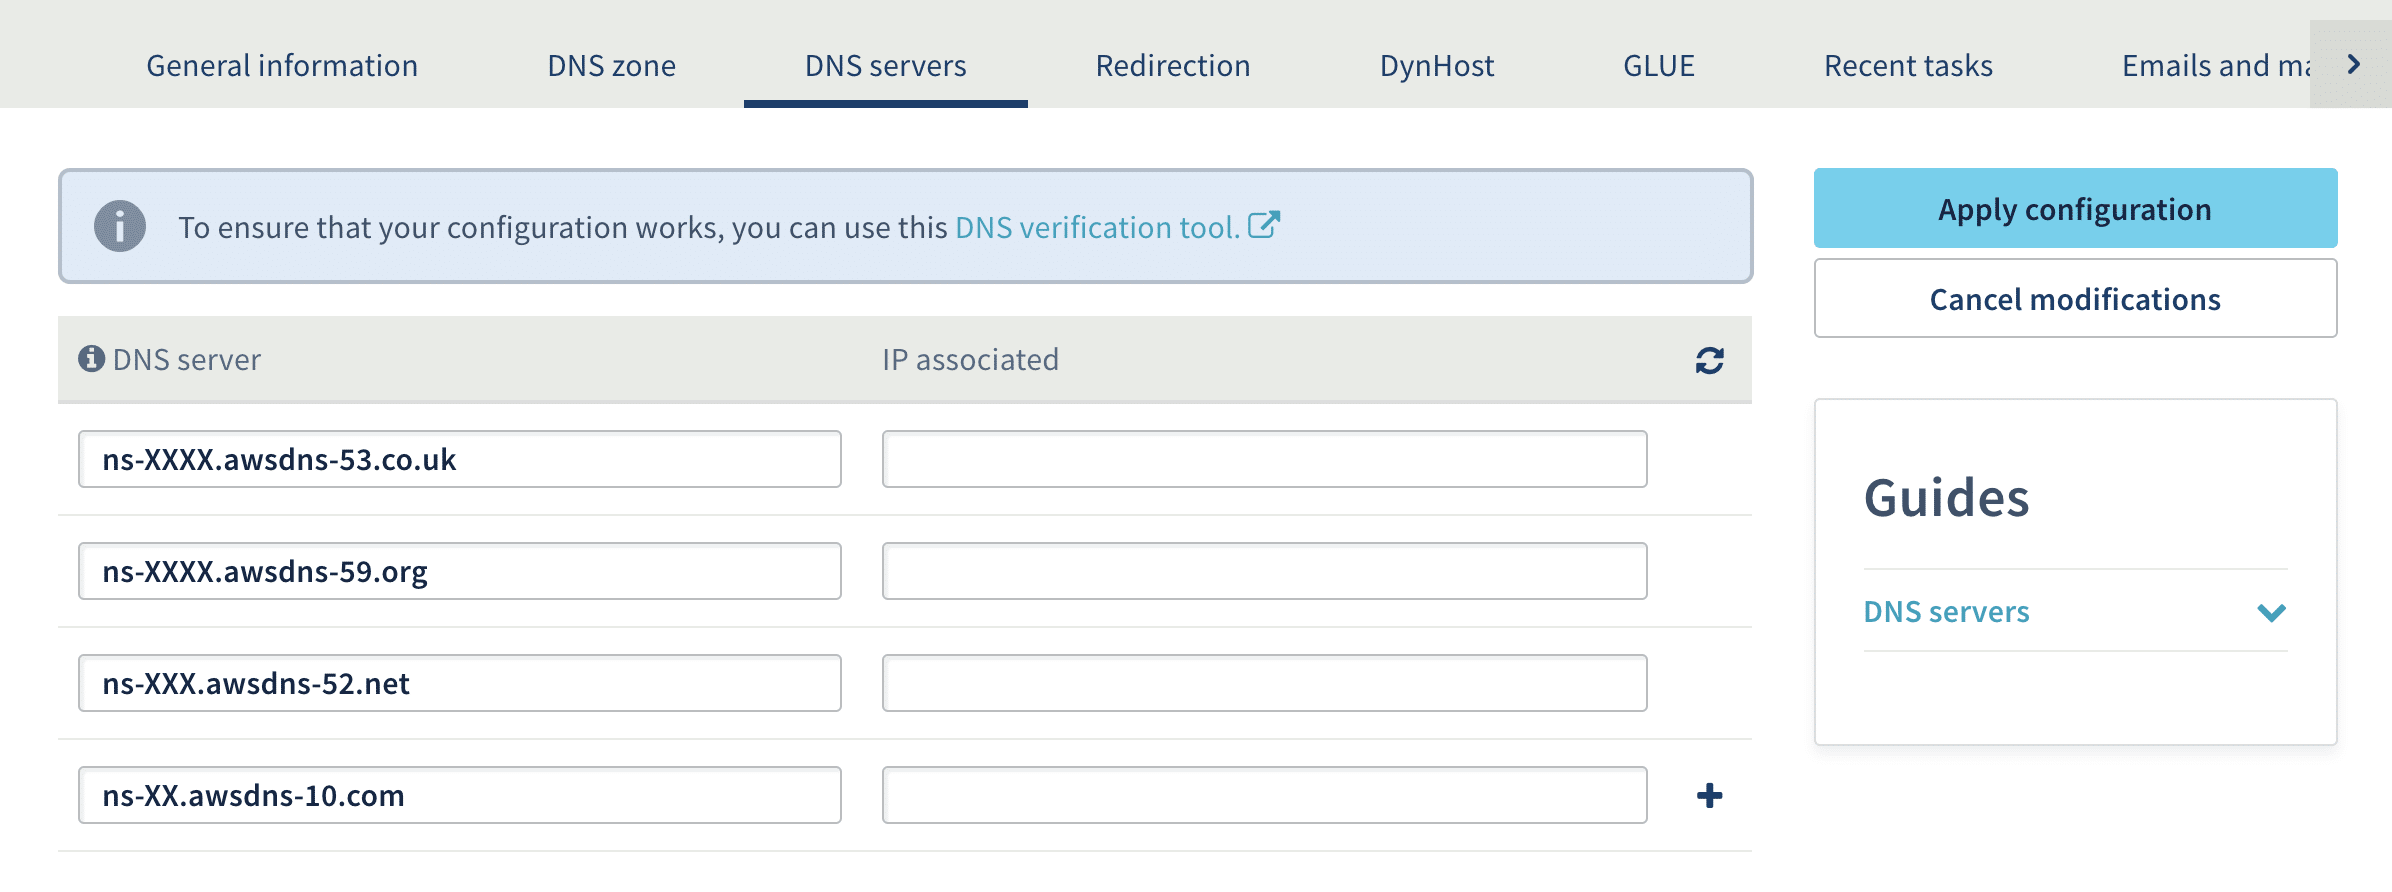 Adicionando servidores DNS Kinsta no painel de administração da OVH